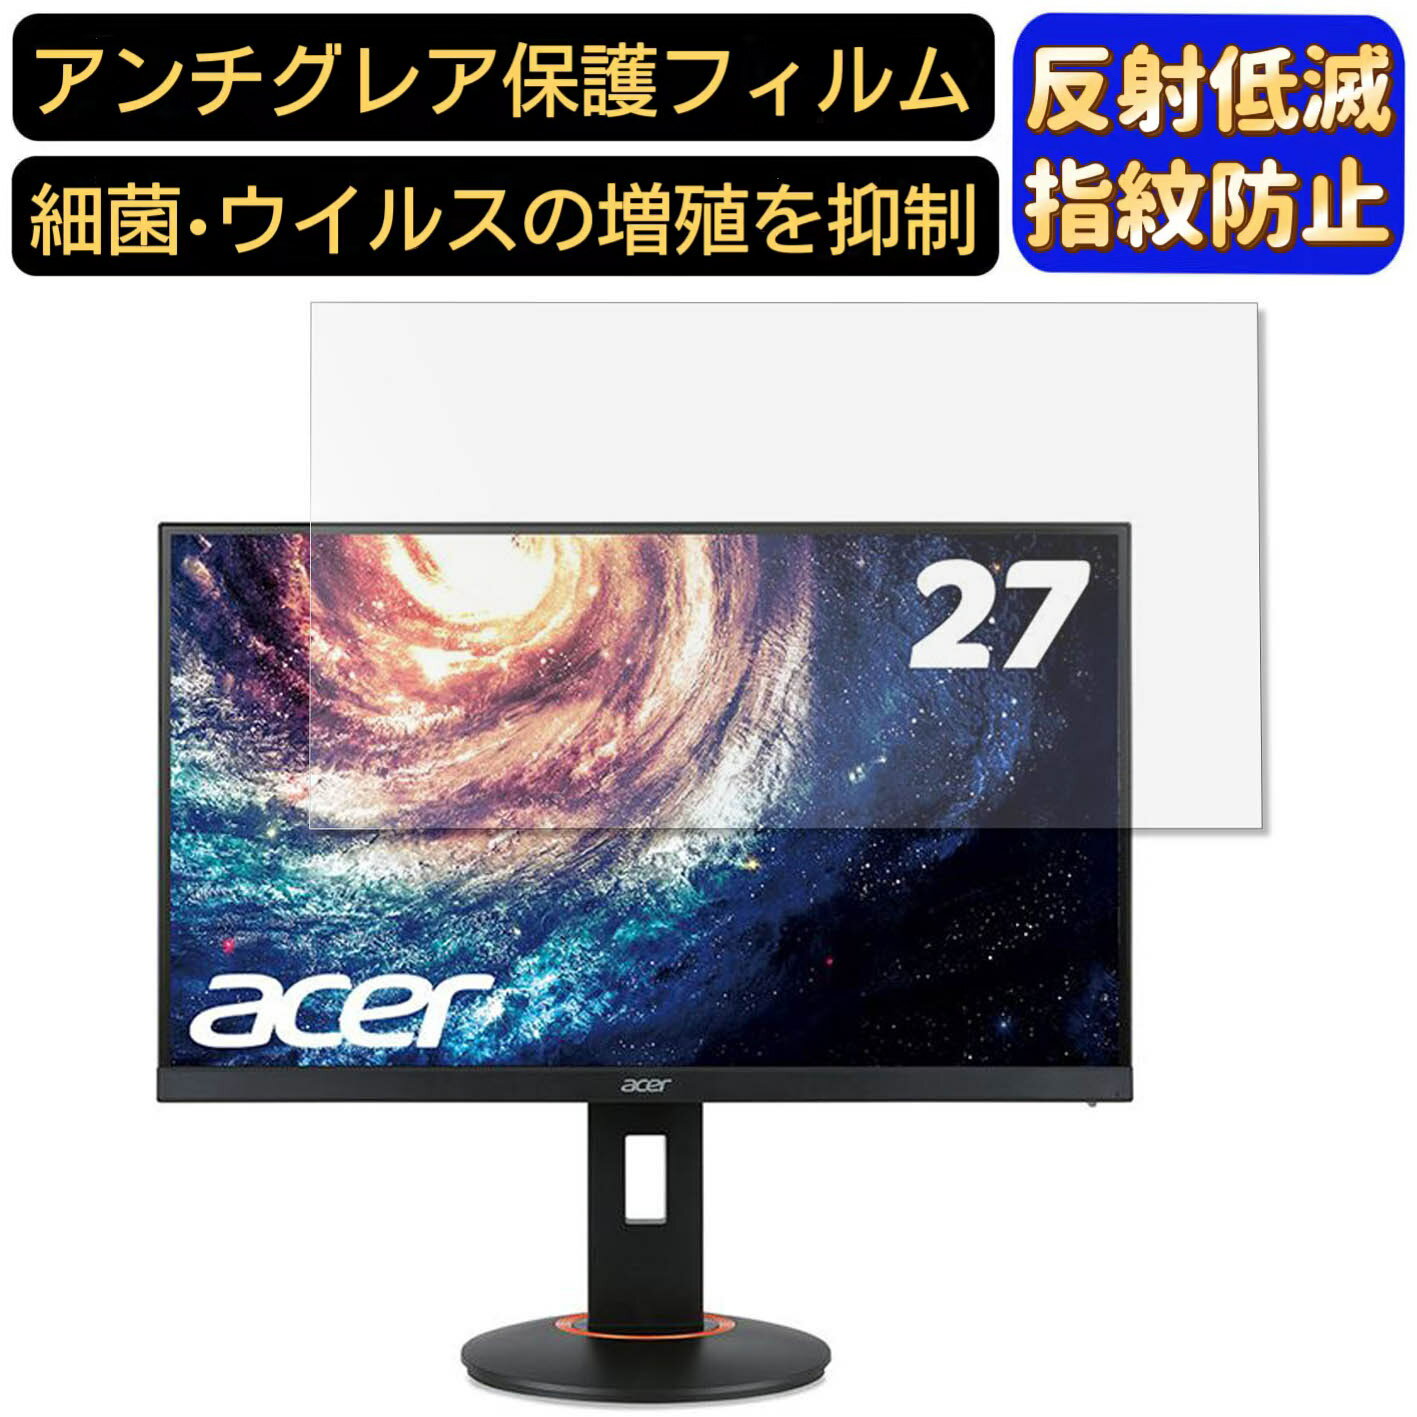 【ポイント2倍】Acer XF270HAbmidprzx (XF0)